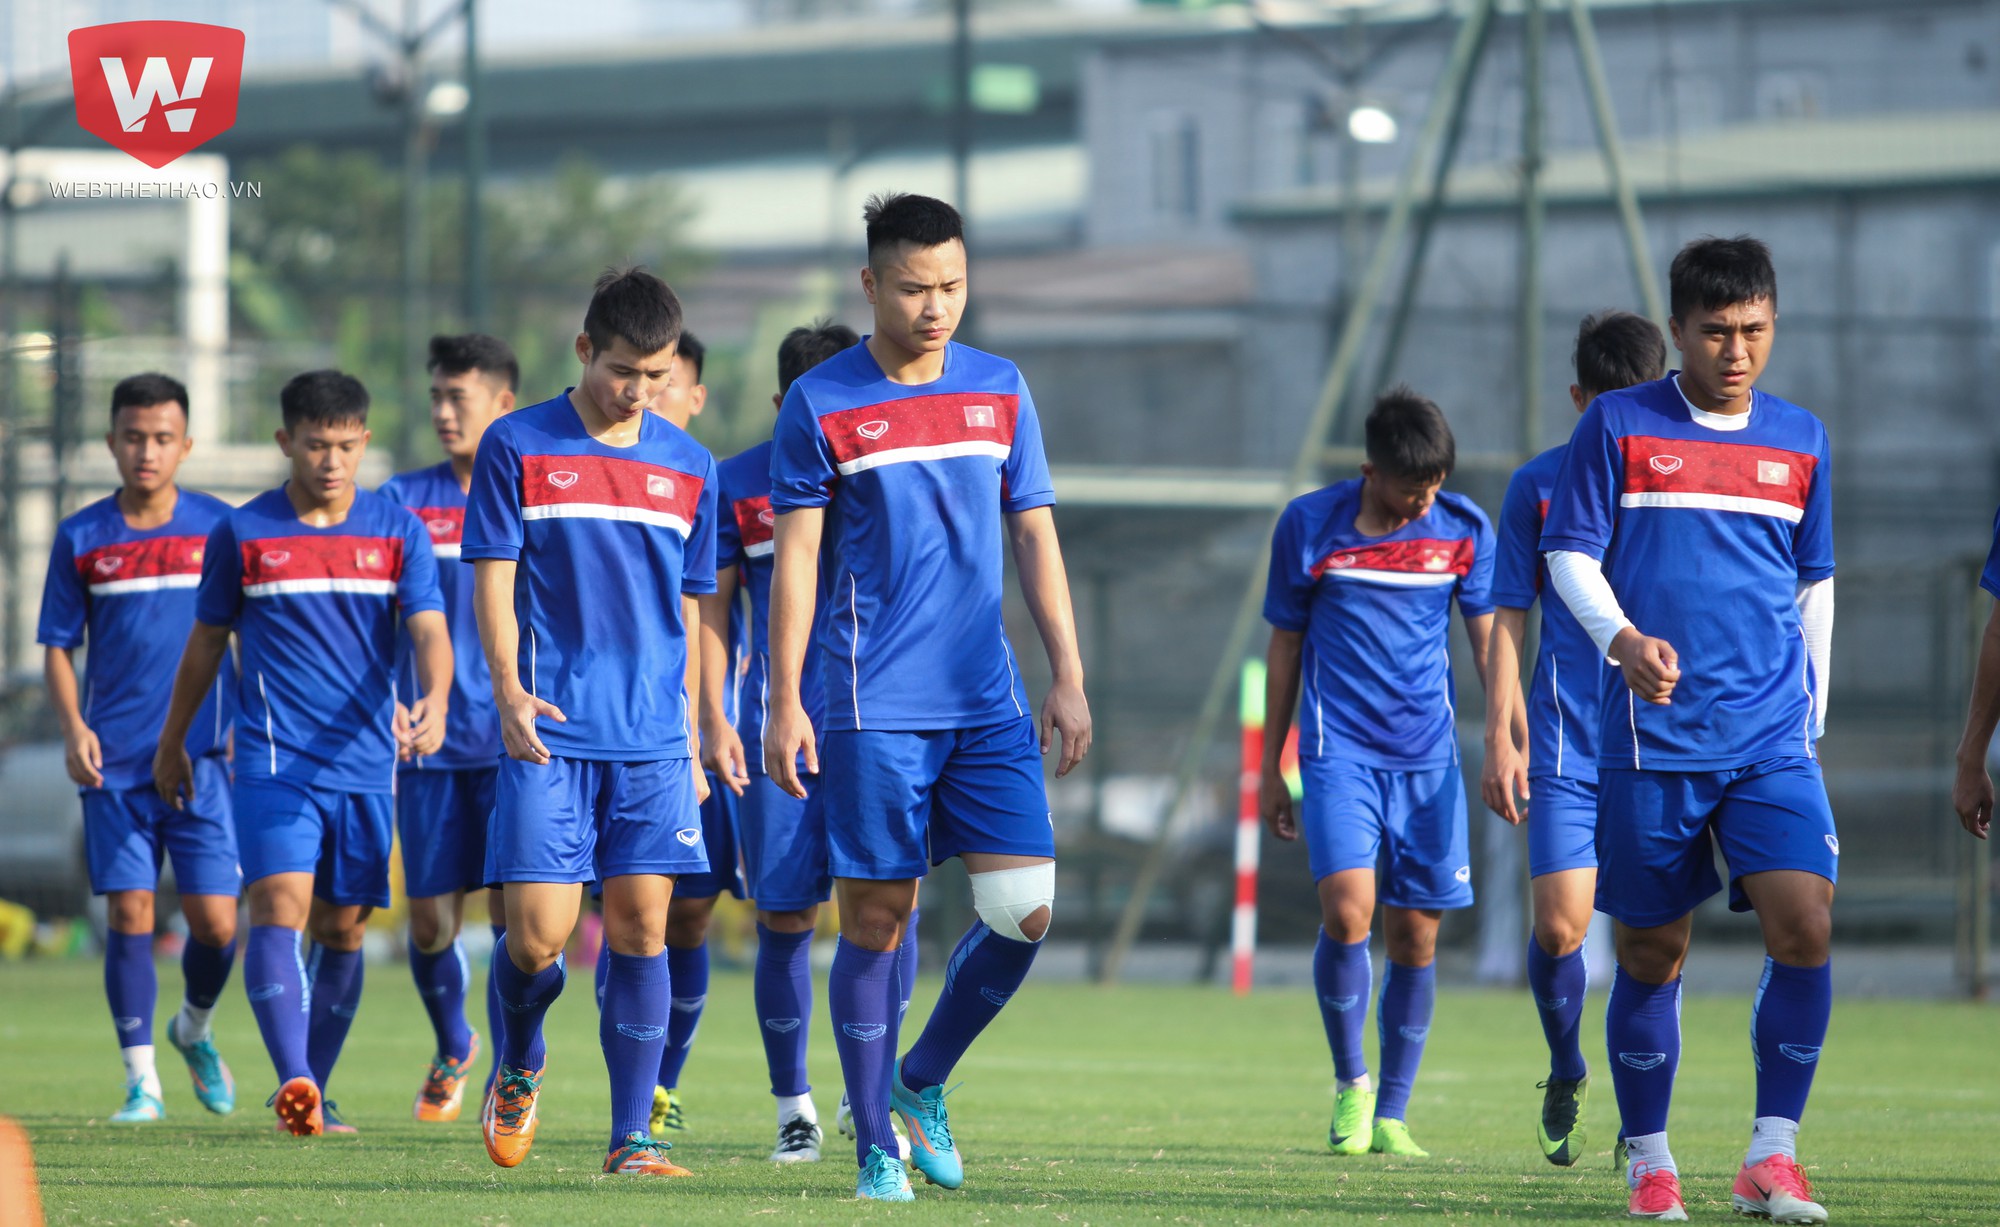 Đội tuyển U19 Việt Nam đã có 1 tháng tập luyện chuẩn bị cho vòng loại U19 châu Á 2018. Ảnh: Trung Thu.